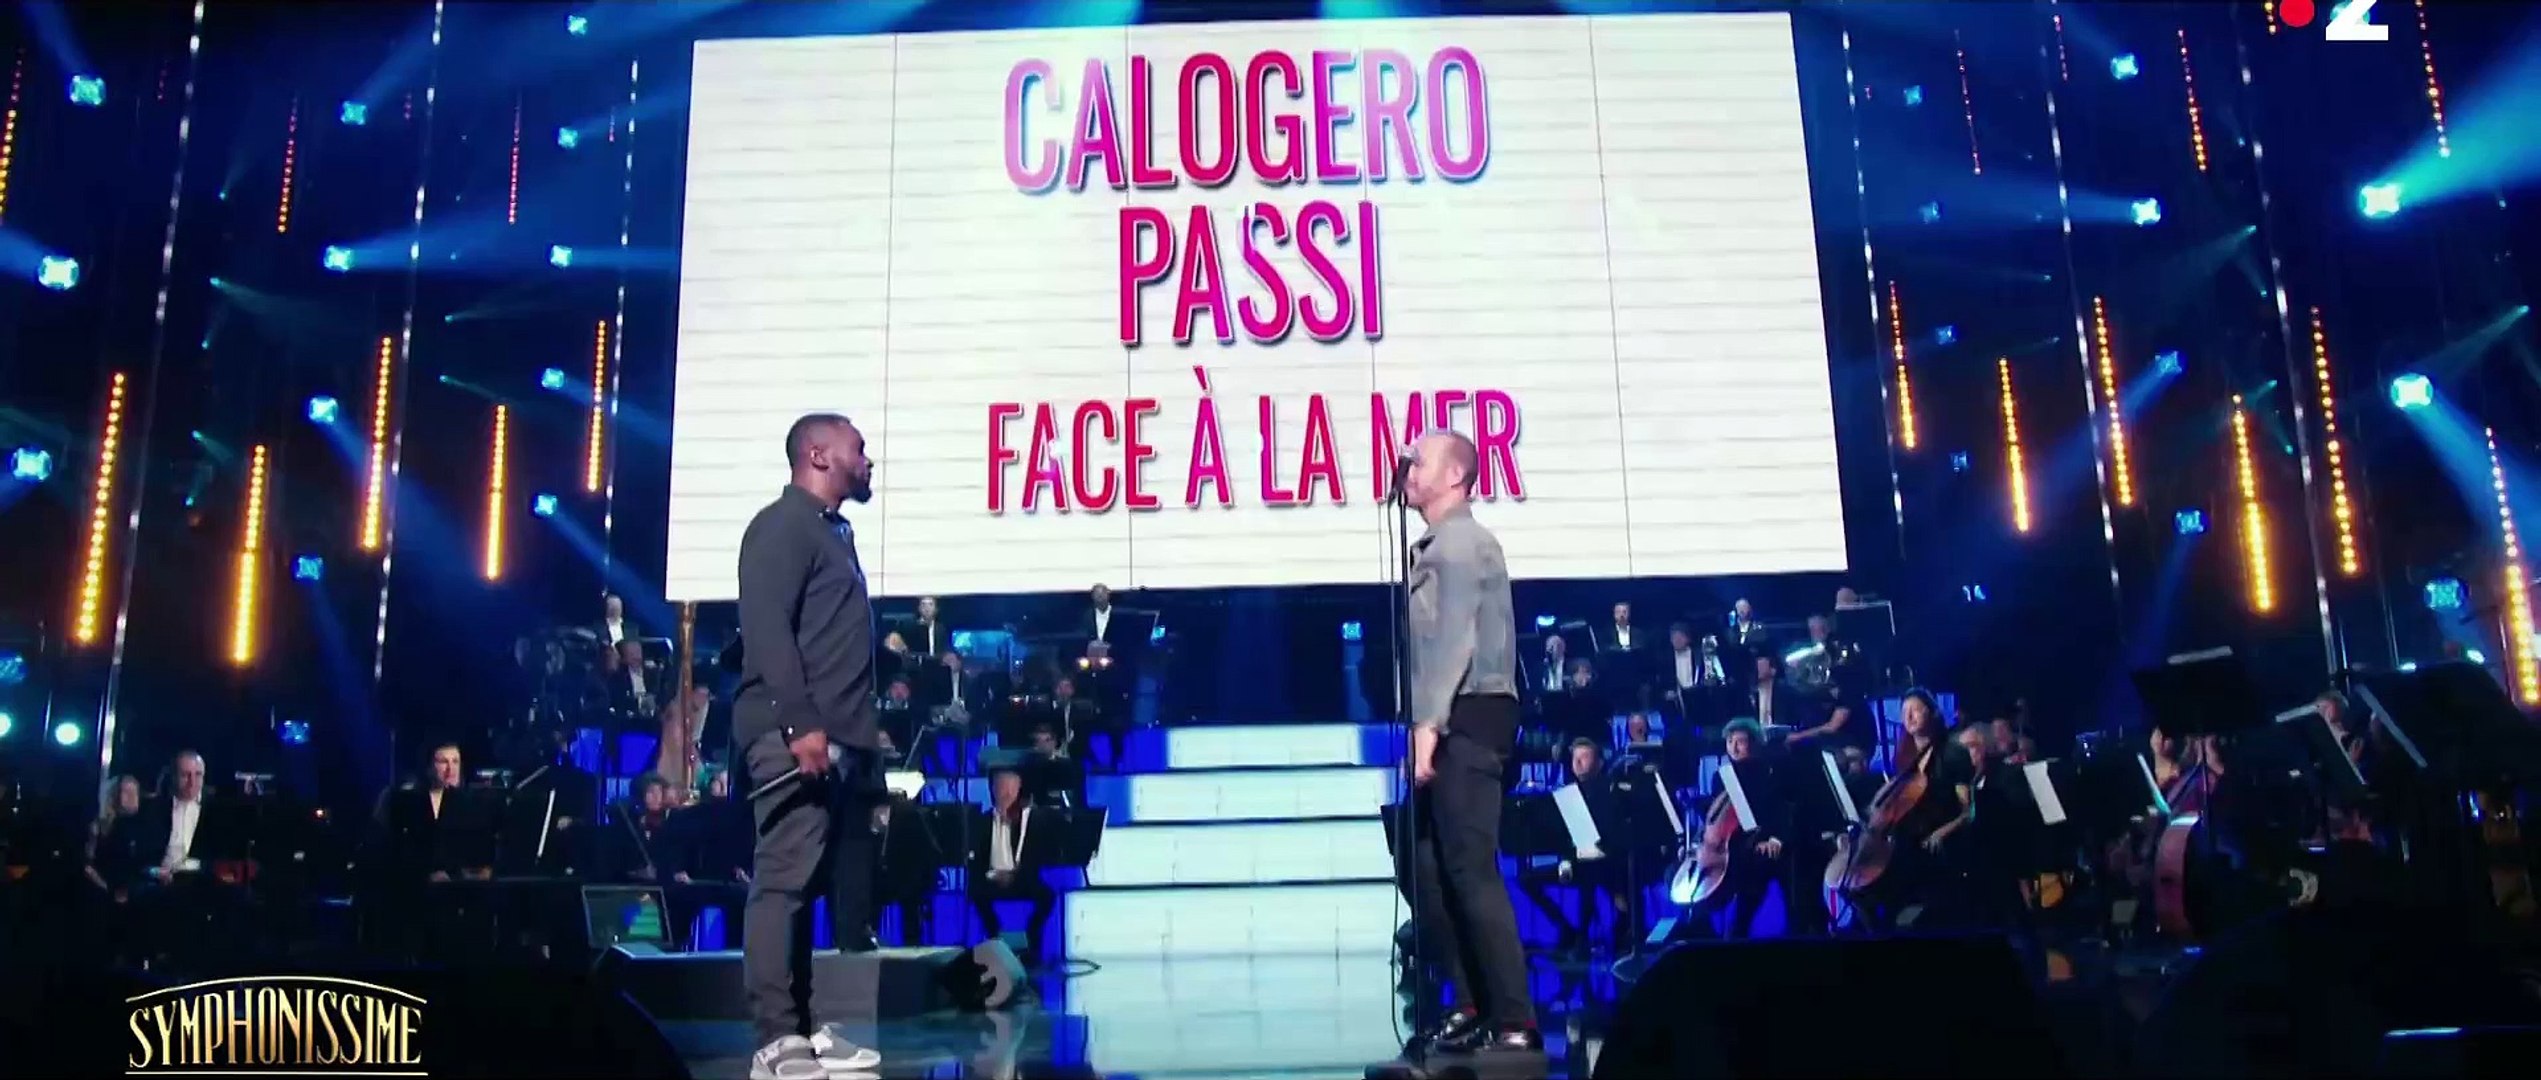 Calogero et Passi chantent "Face à la mer" en live - Vidéo Dailymotion